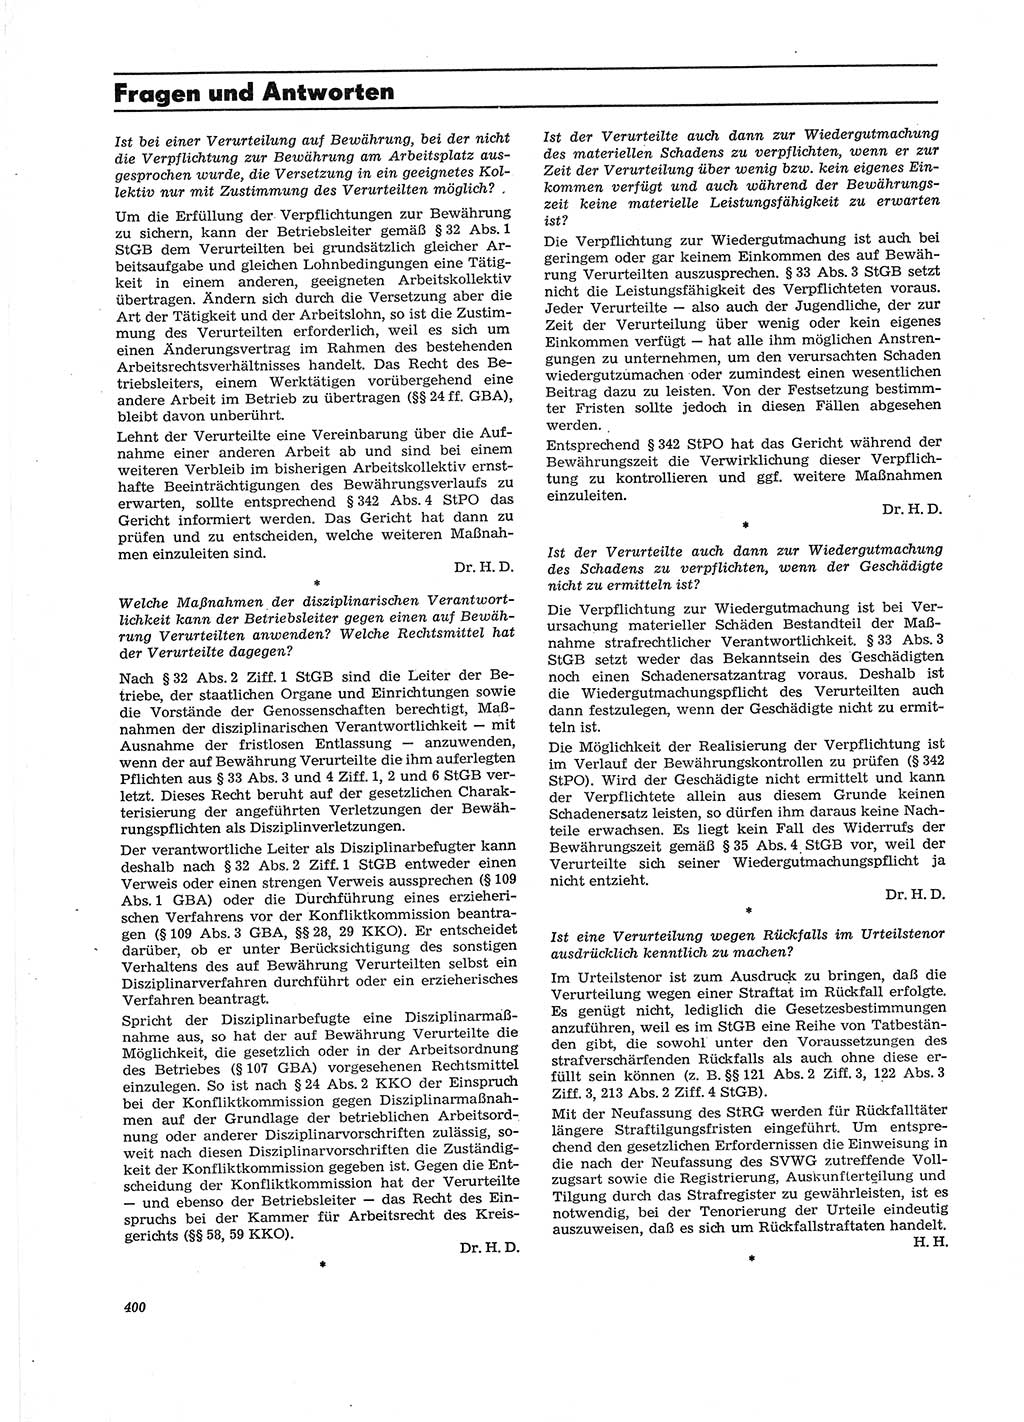 Neue Justiz (NJ), Zeitschrift für Recht und Rechtswissenschaft [Deutsche Demokratische Republik (DDR)], 29. Jahrgang 1975, Seite 400 (NJ DDR 1975, S. 400)